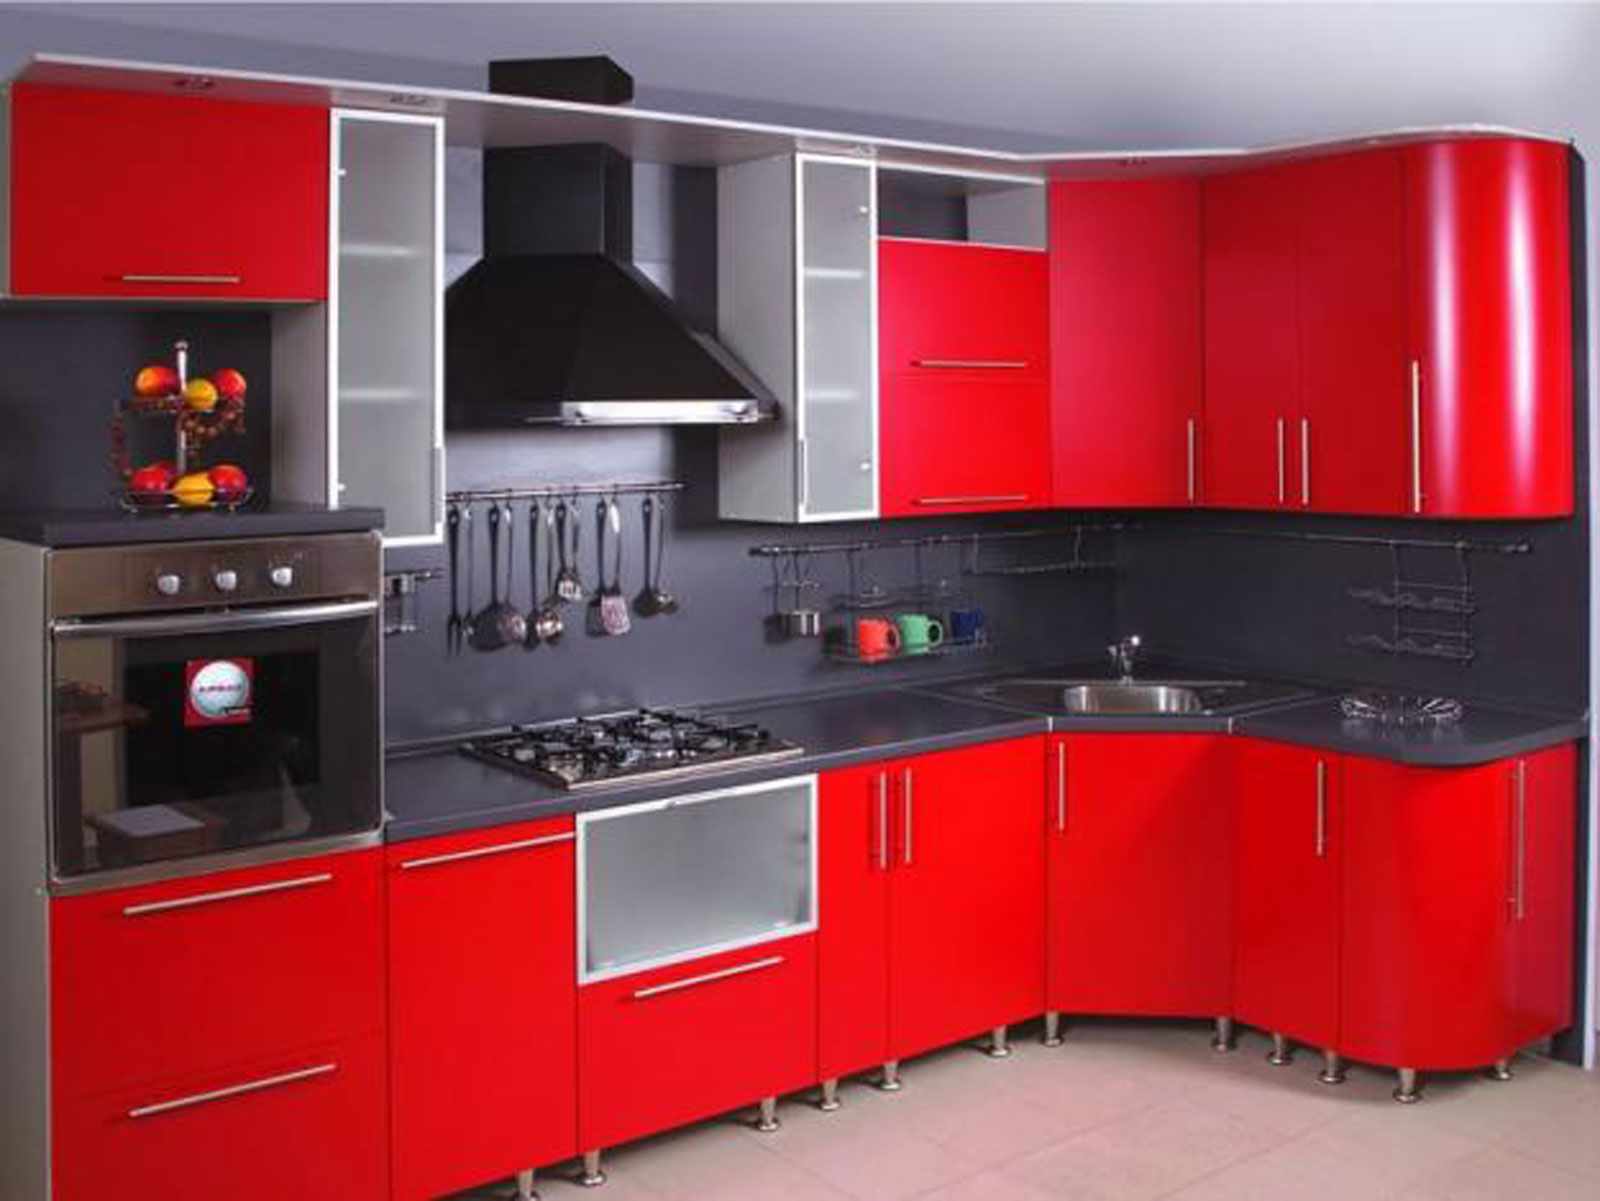 فكرة المطبخ الأحمر الداخلي مشرق